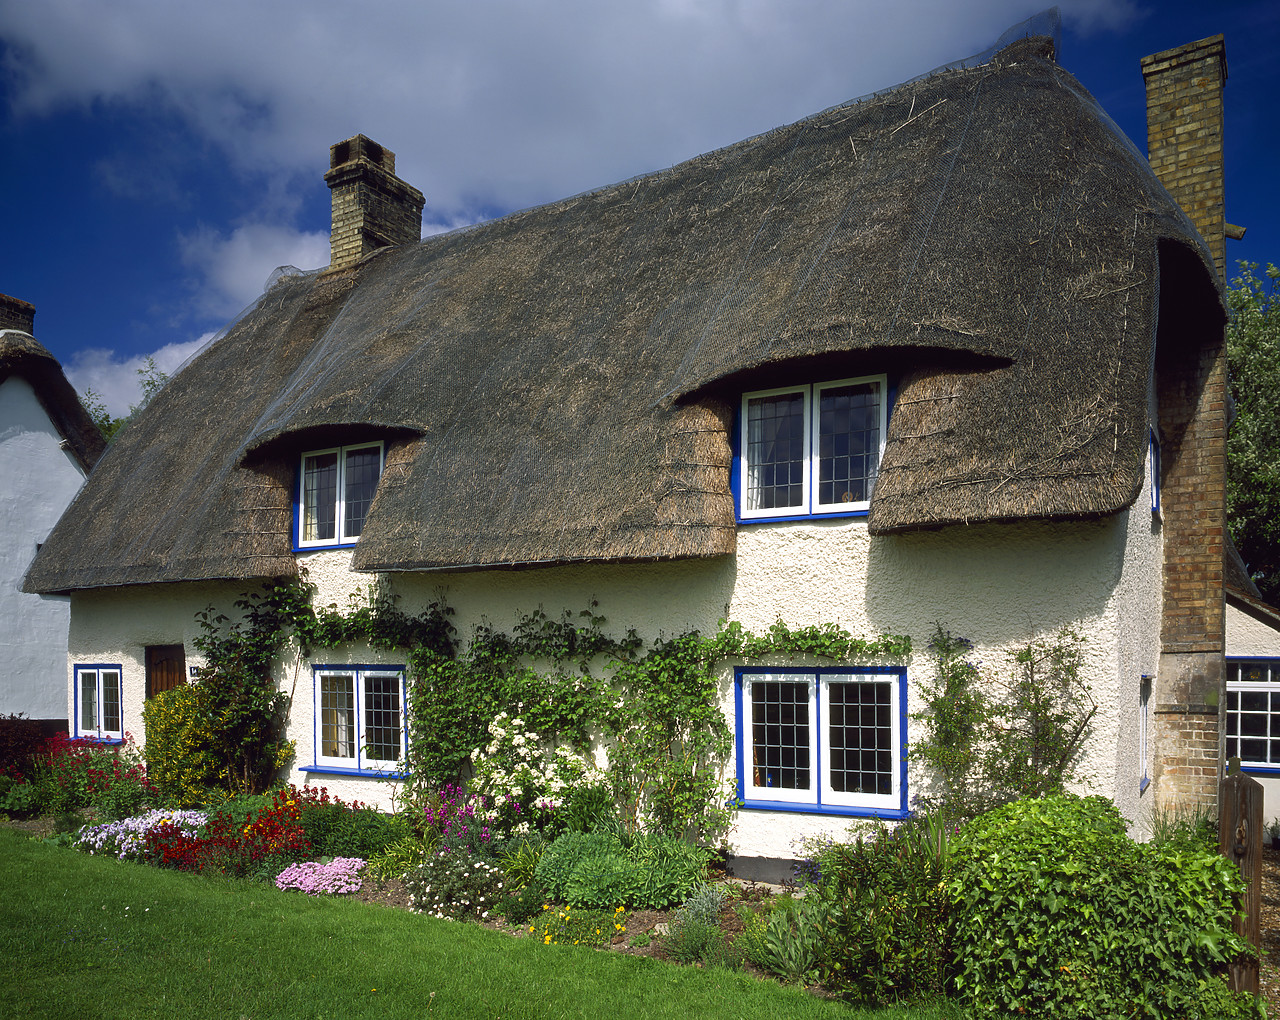 #050130-2 - Thatched Cottage, Barrington, Cambridgeshire, England